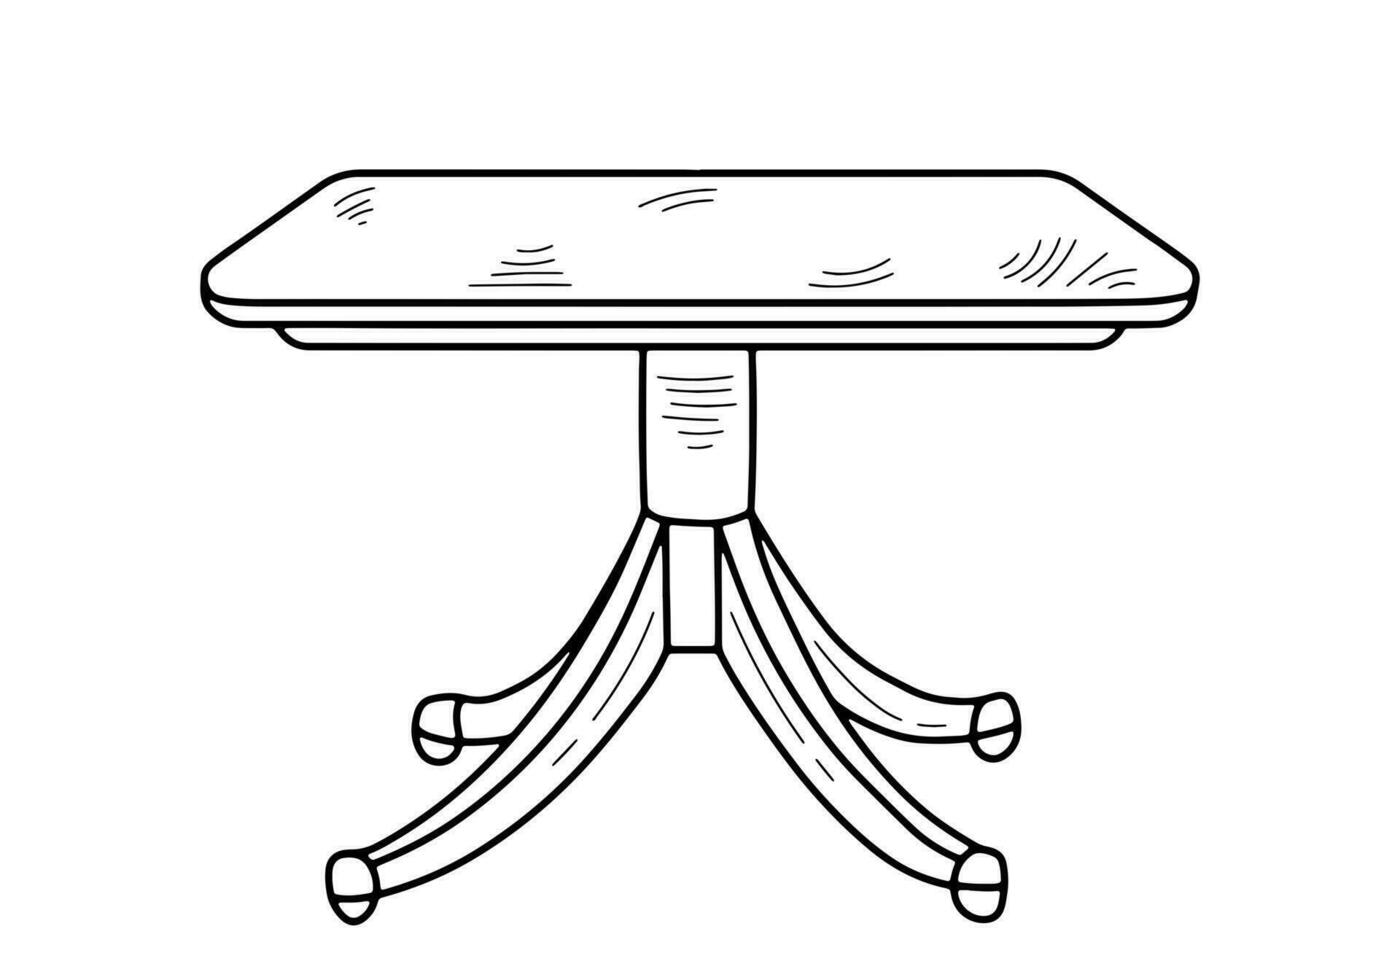 bosquejo de un mesa, escritorio, dieta mesa, escritorio, cocina mesa. pedazo de mueble. mueble para dormitorio, estudiar, vivo habitación, cocina vector